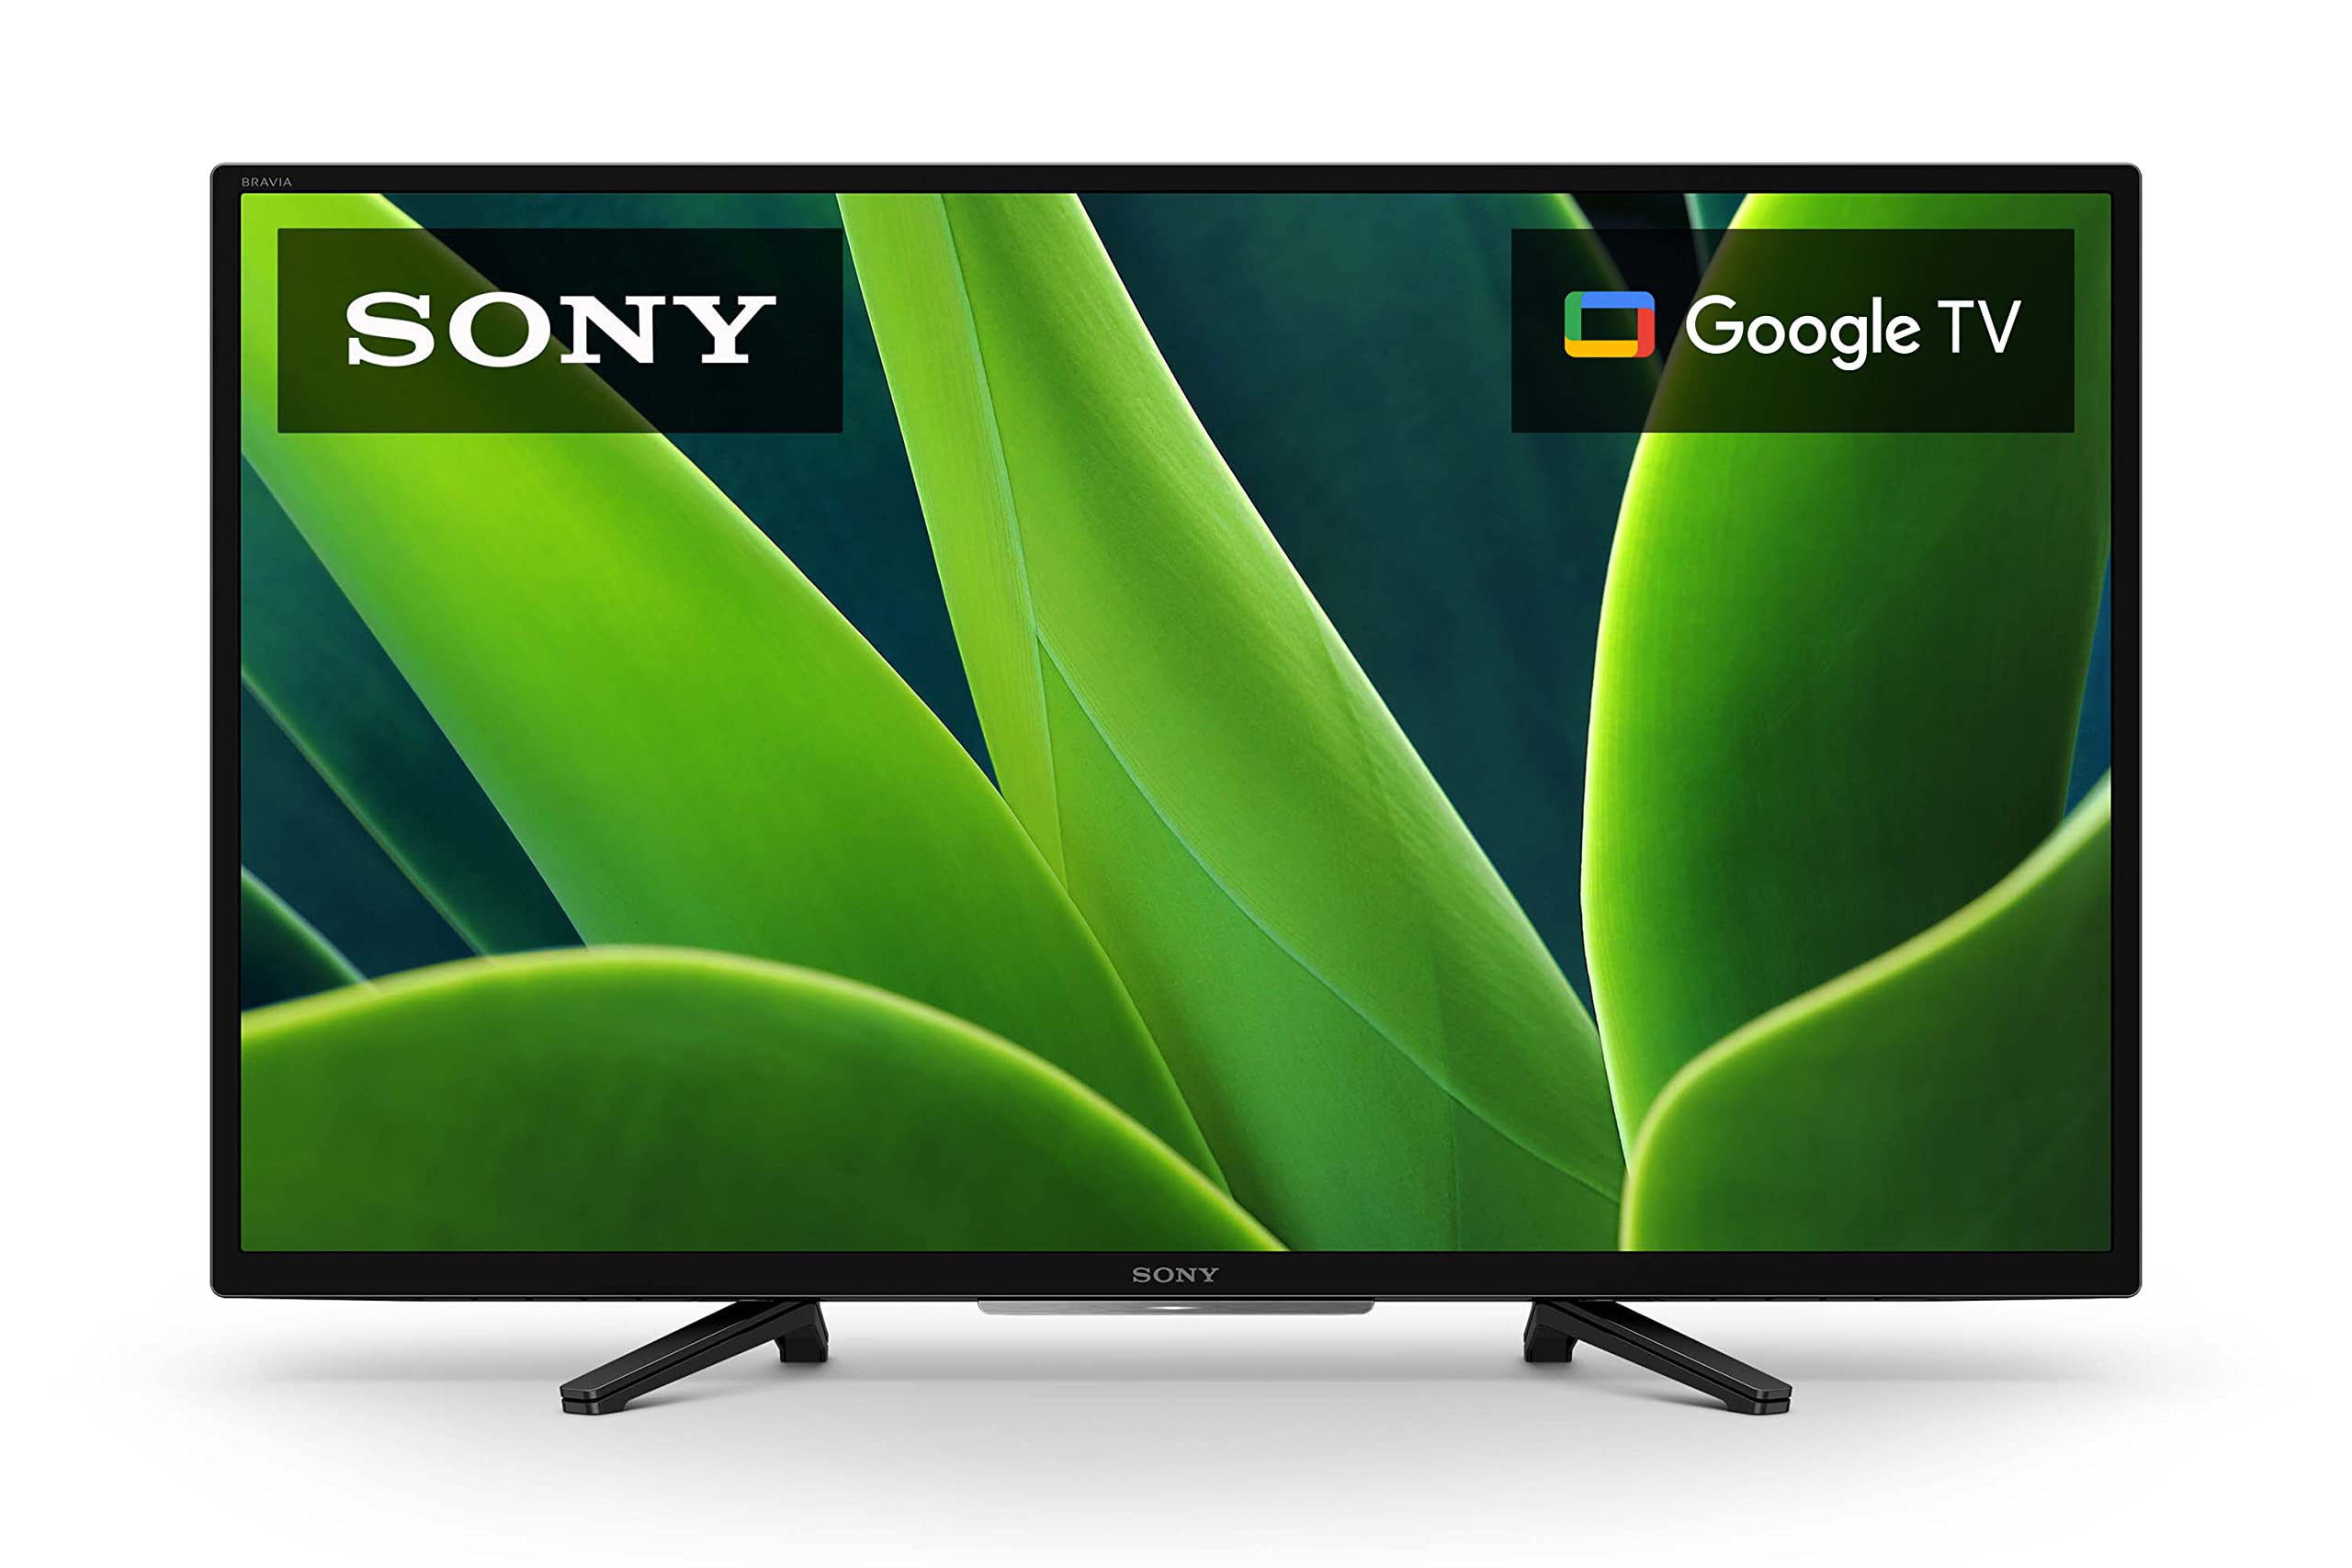 Sony Série W830K da TV HD LED HDR de 32 polegadas 720p com Google TV e Google Assistant-modelo 2022